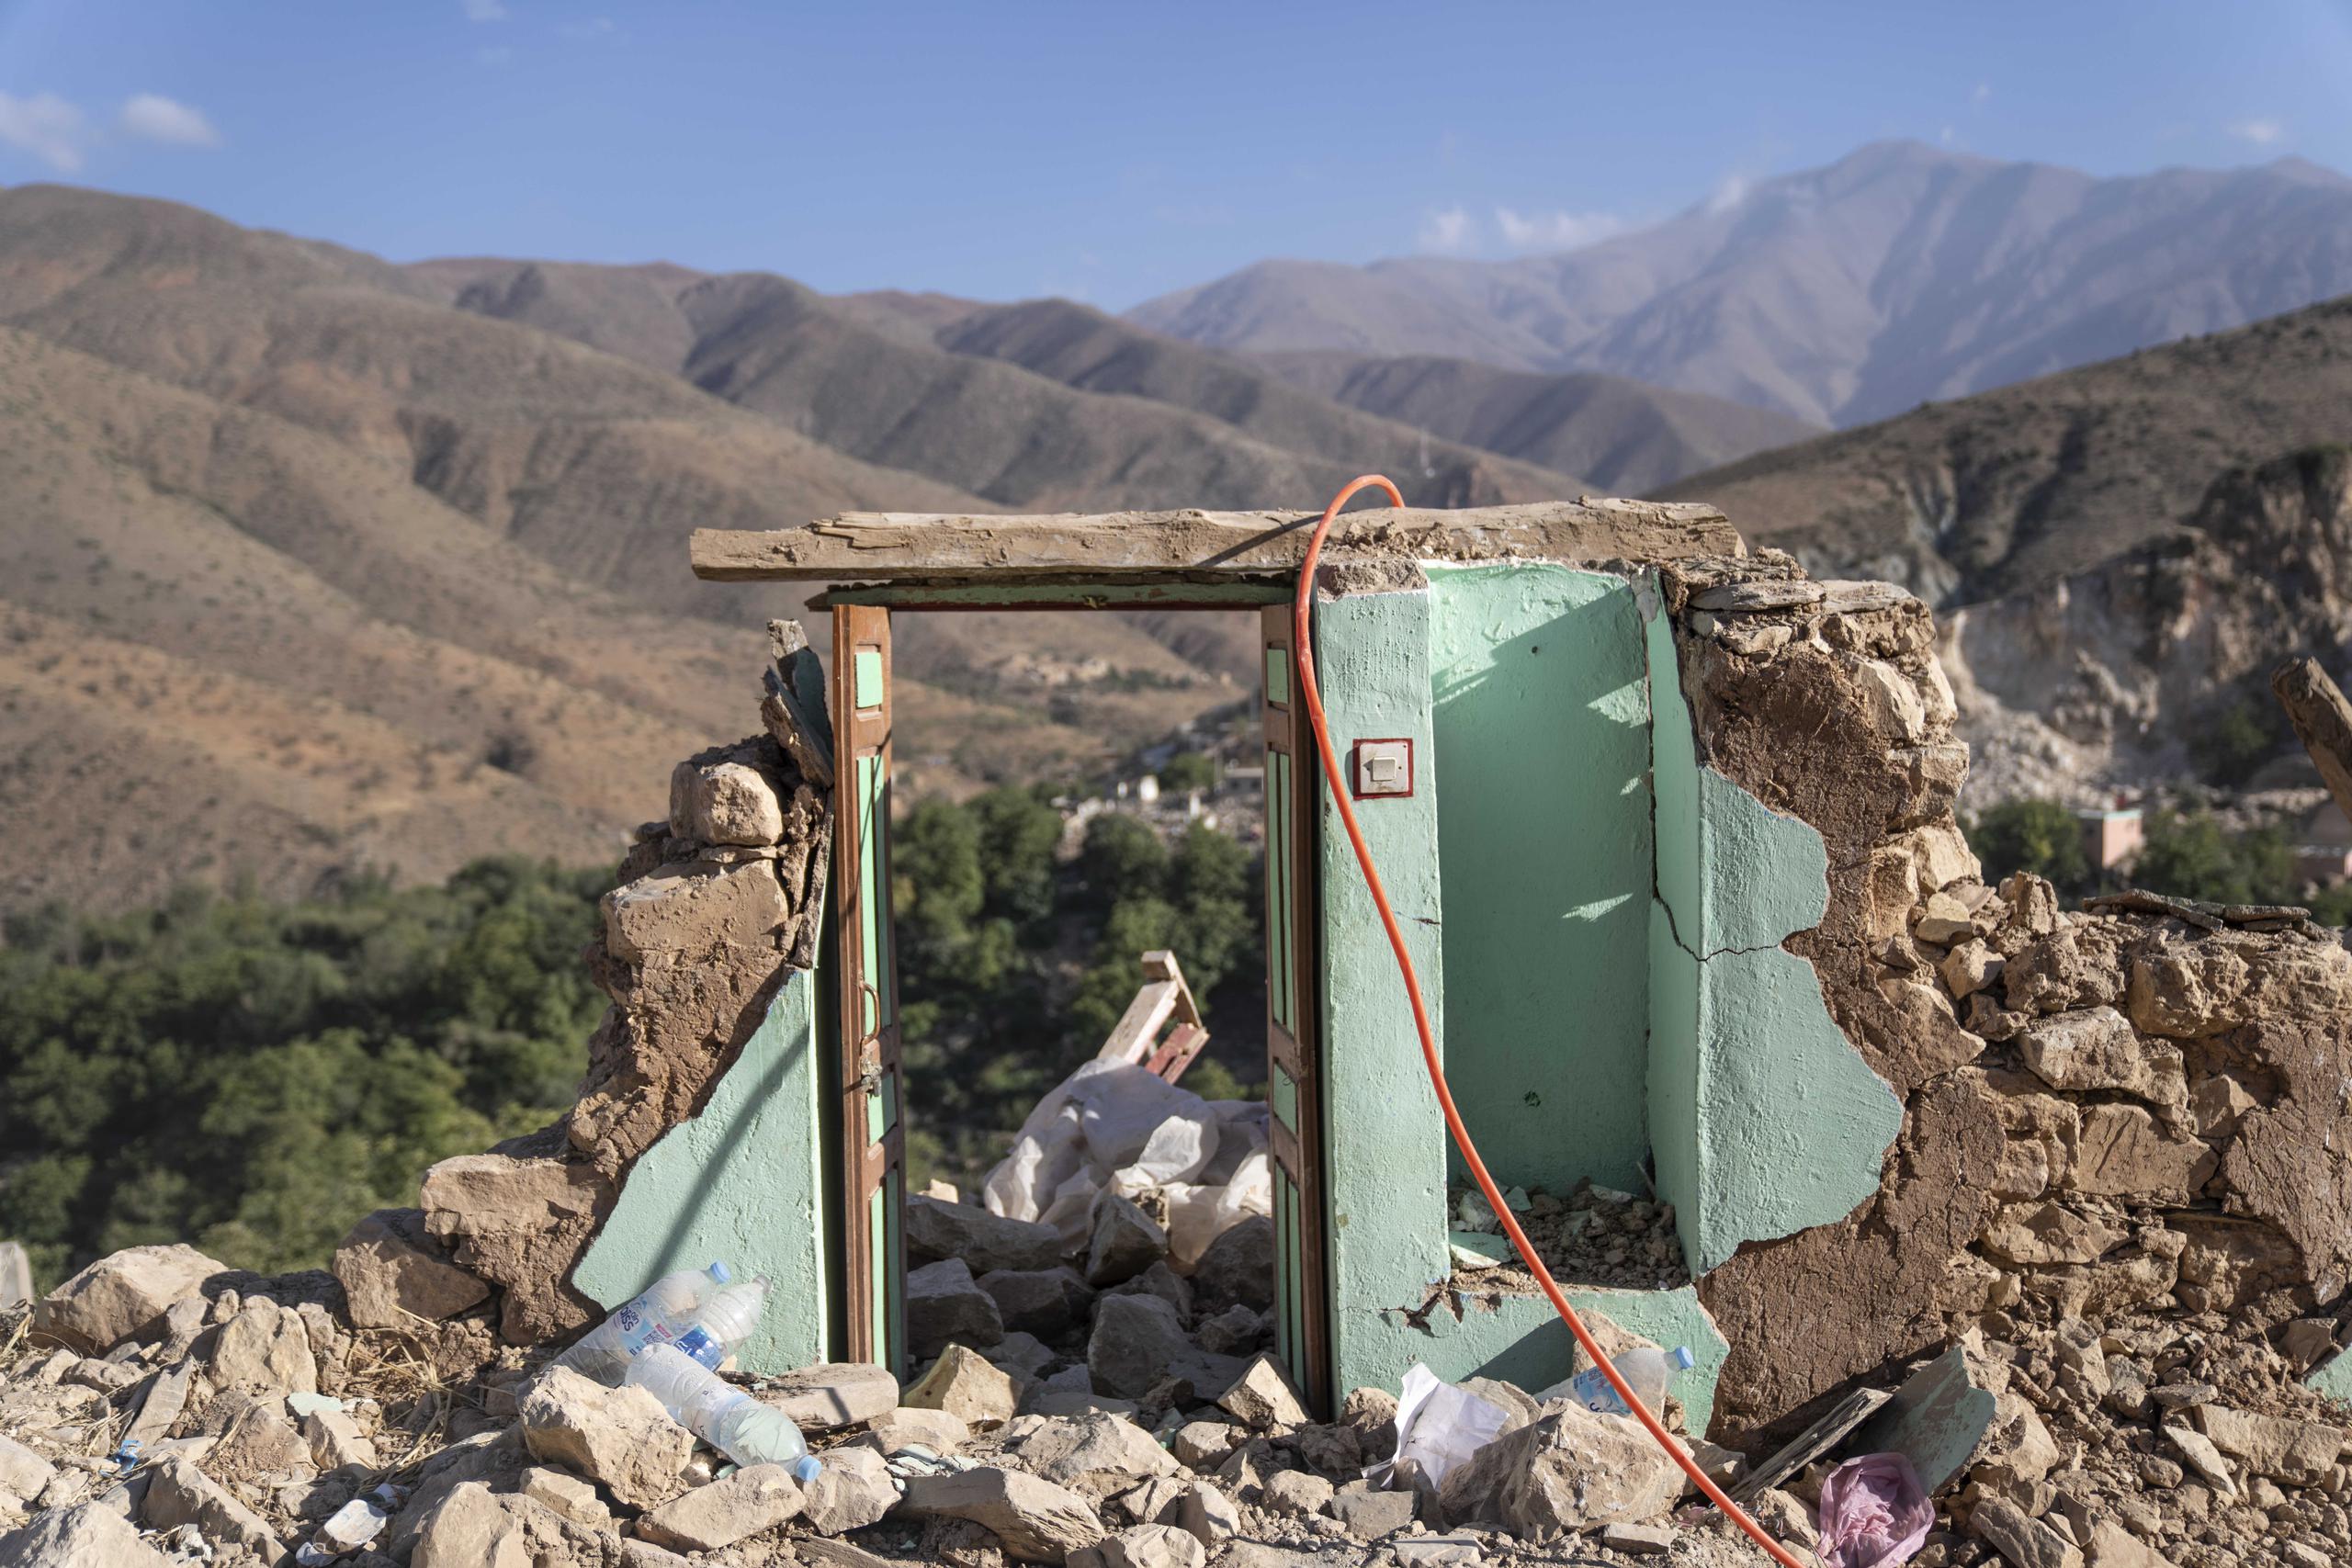 La puerta de lo que solía ser una casa se encuentra entre los escombros causados por el terremoto, en la ciudad de Imi N'tala, en las afueras de Marrakech, Marruecos. (Foto AP/Mosa'ab Elshamy)